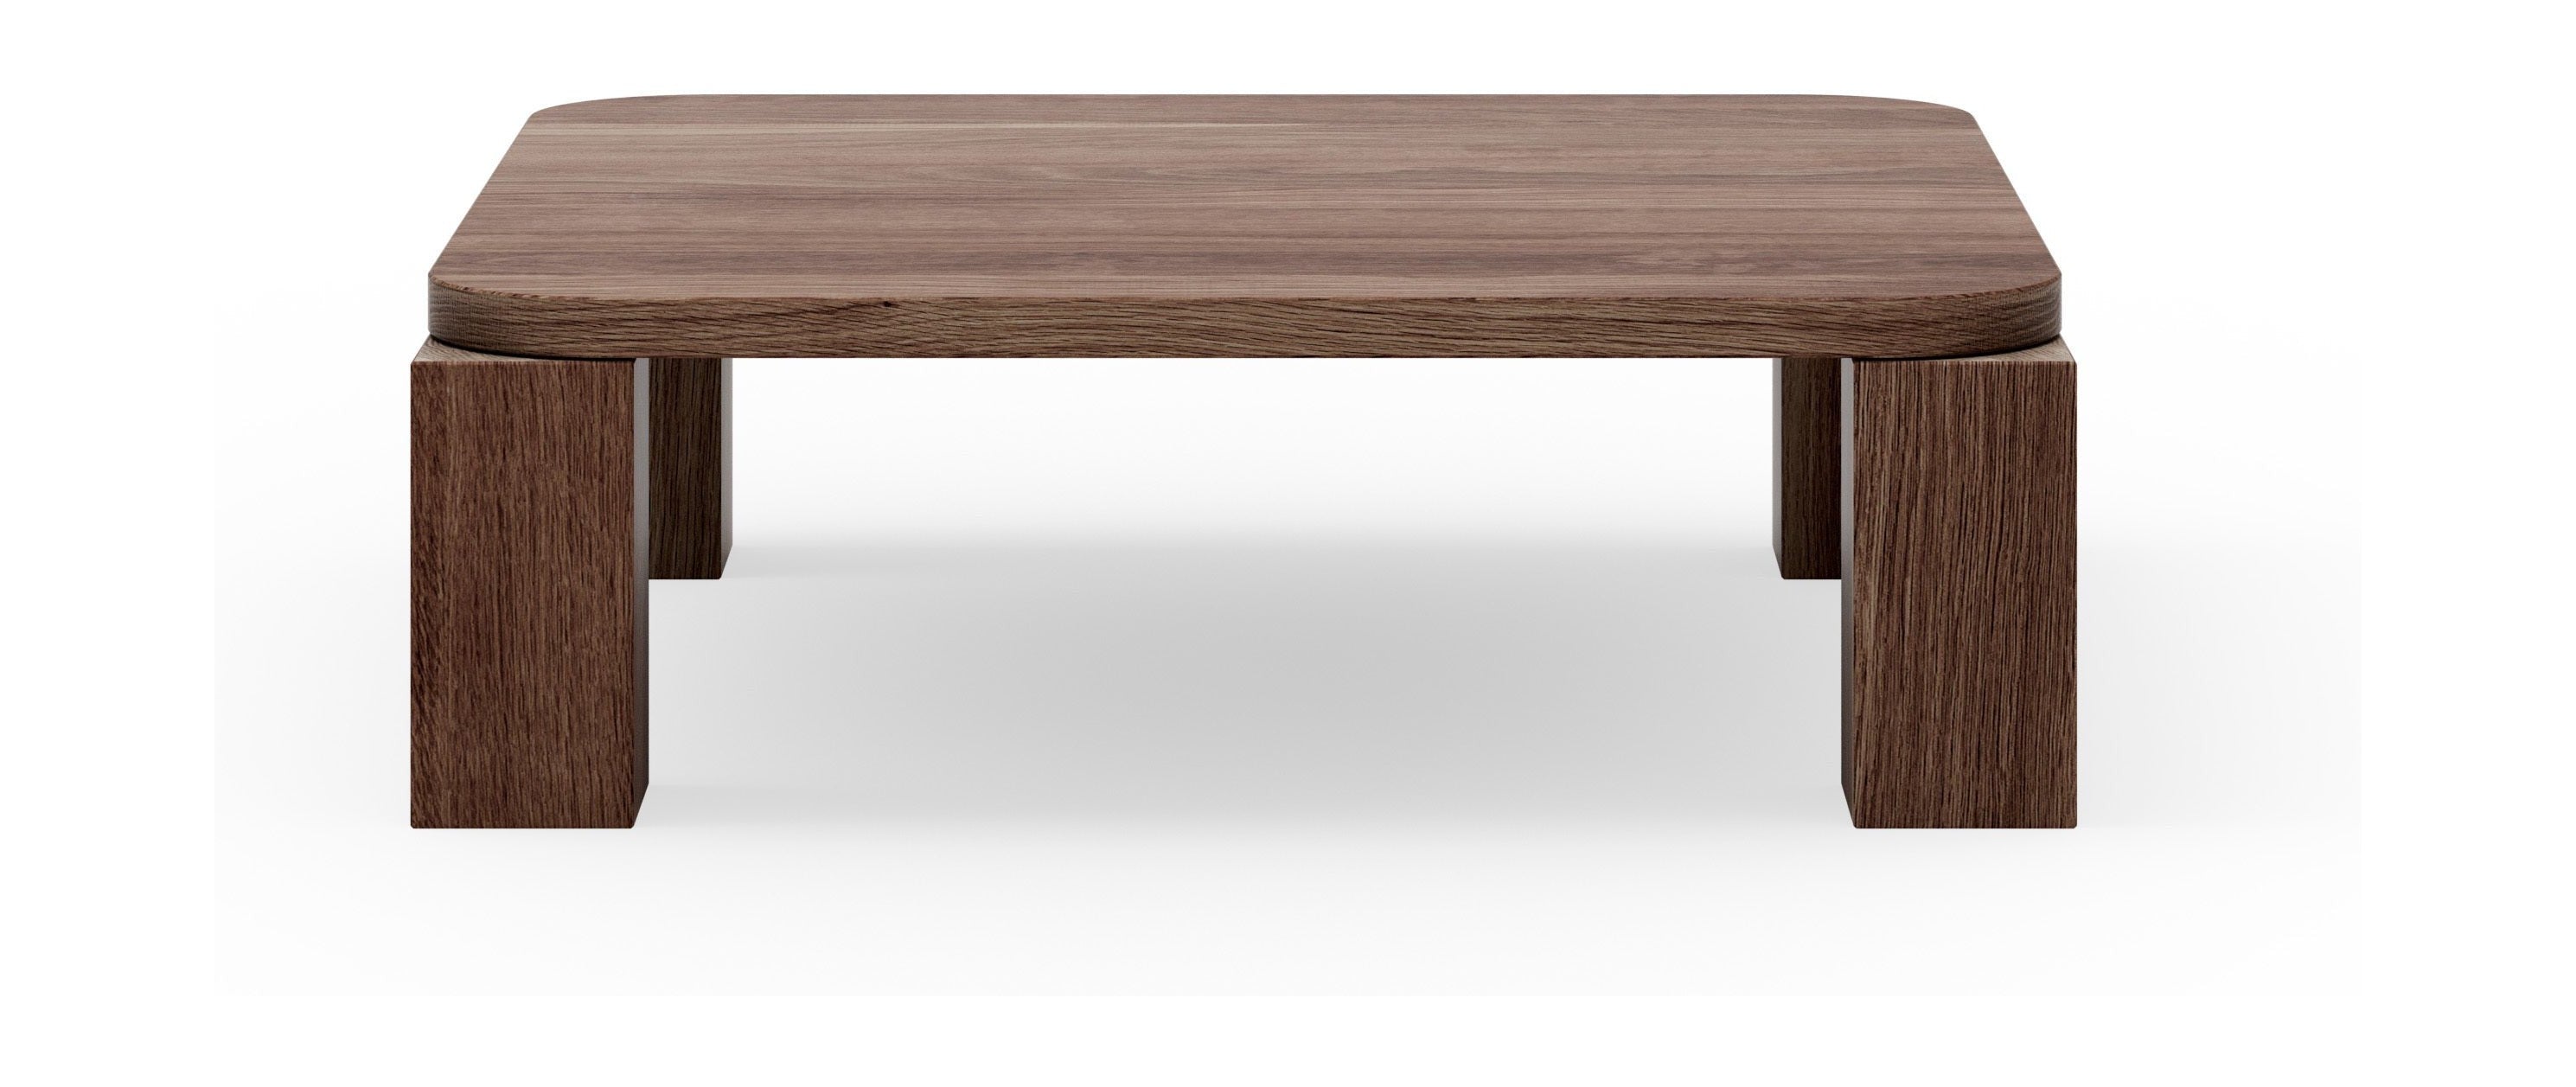 New Works Atlas Coffee Table Fumed Oak, 82x82 Cm